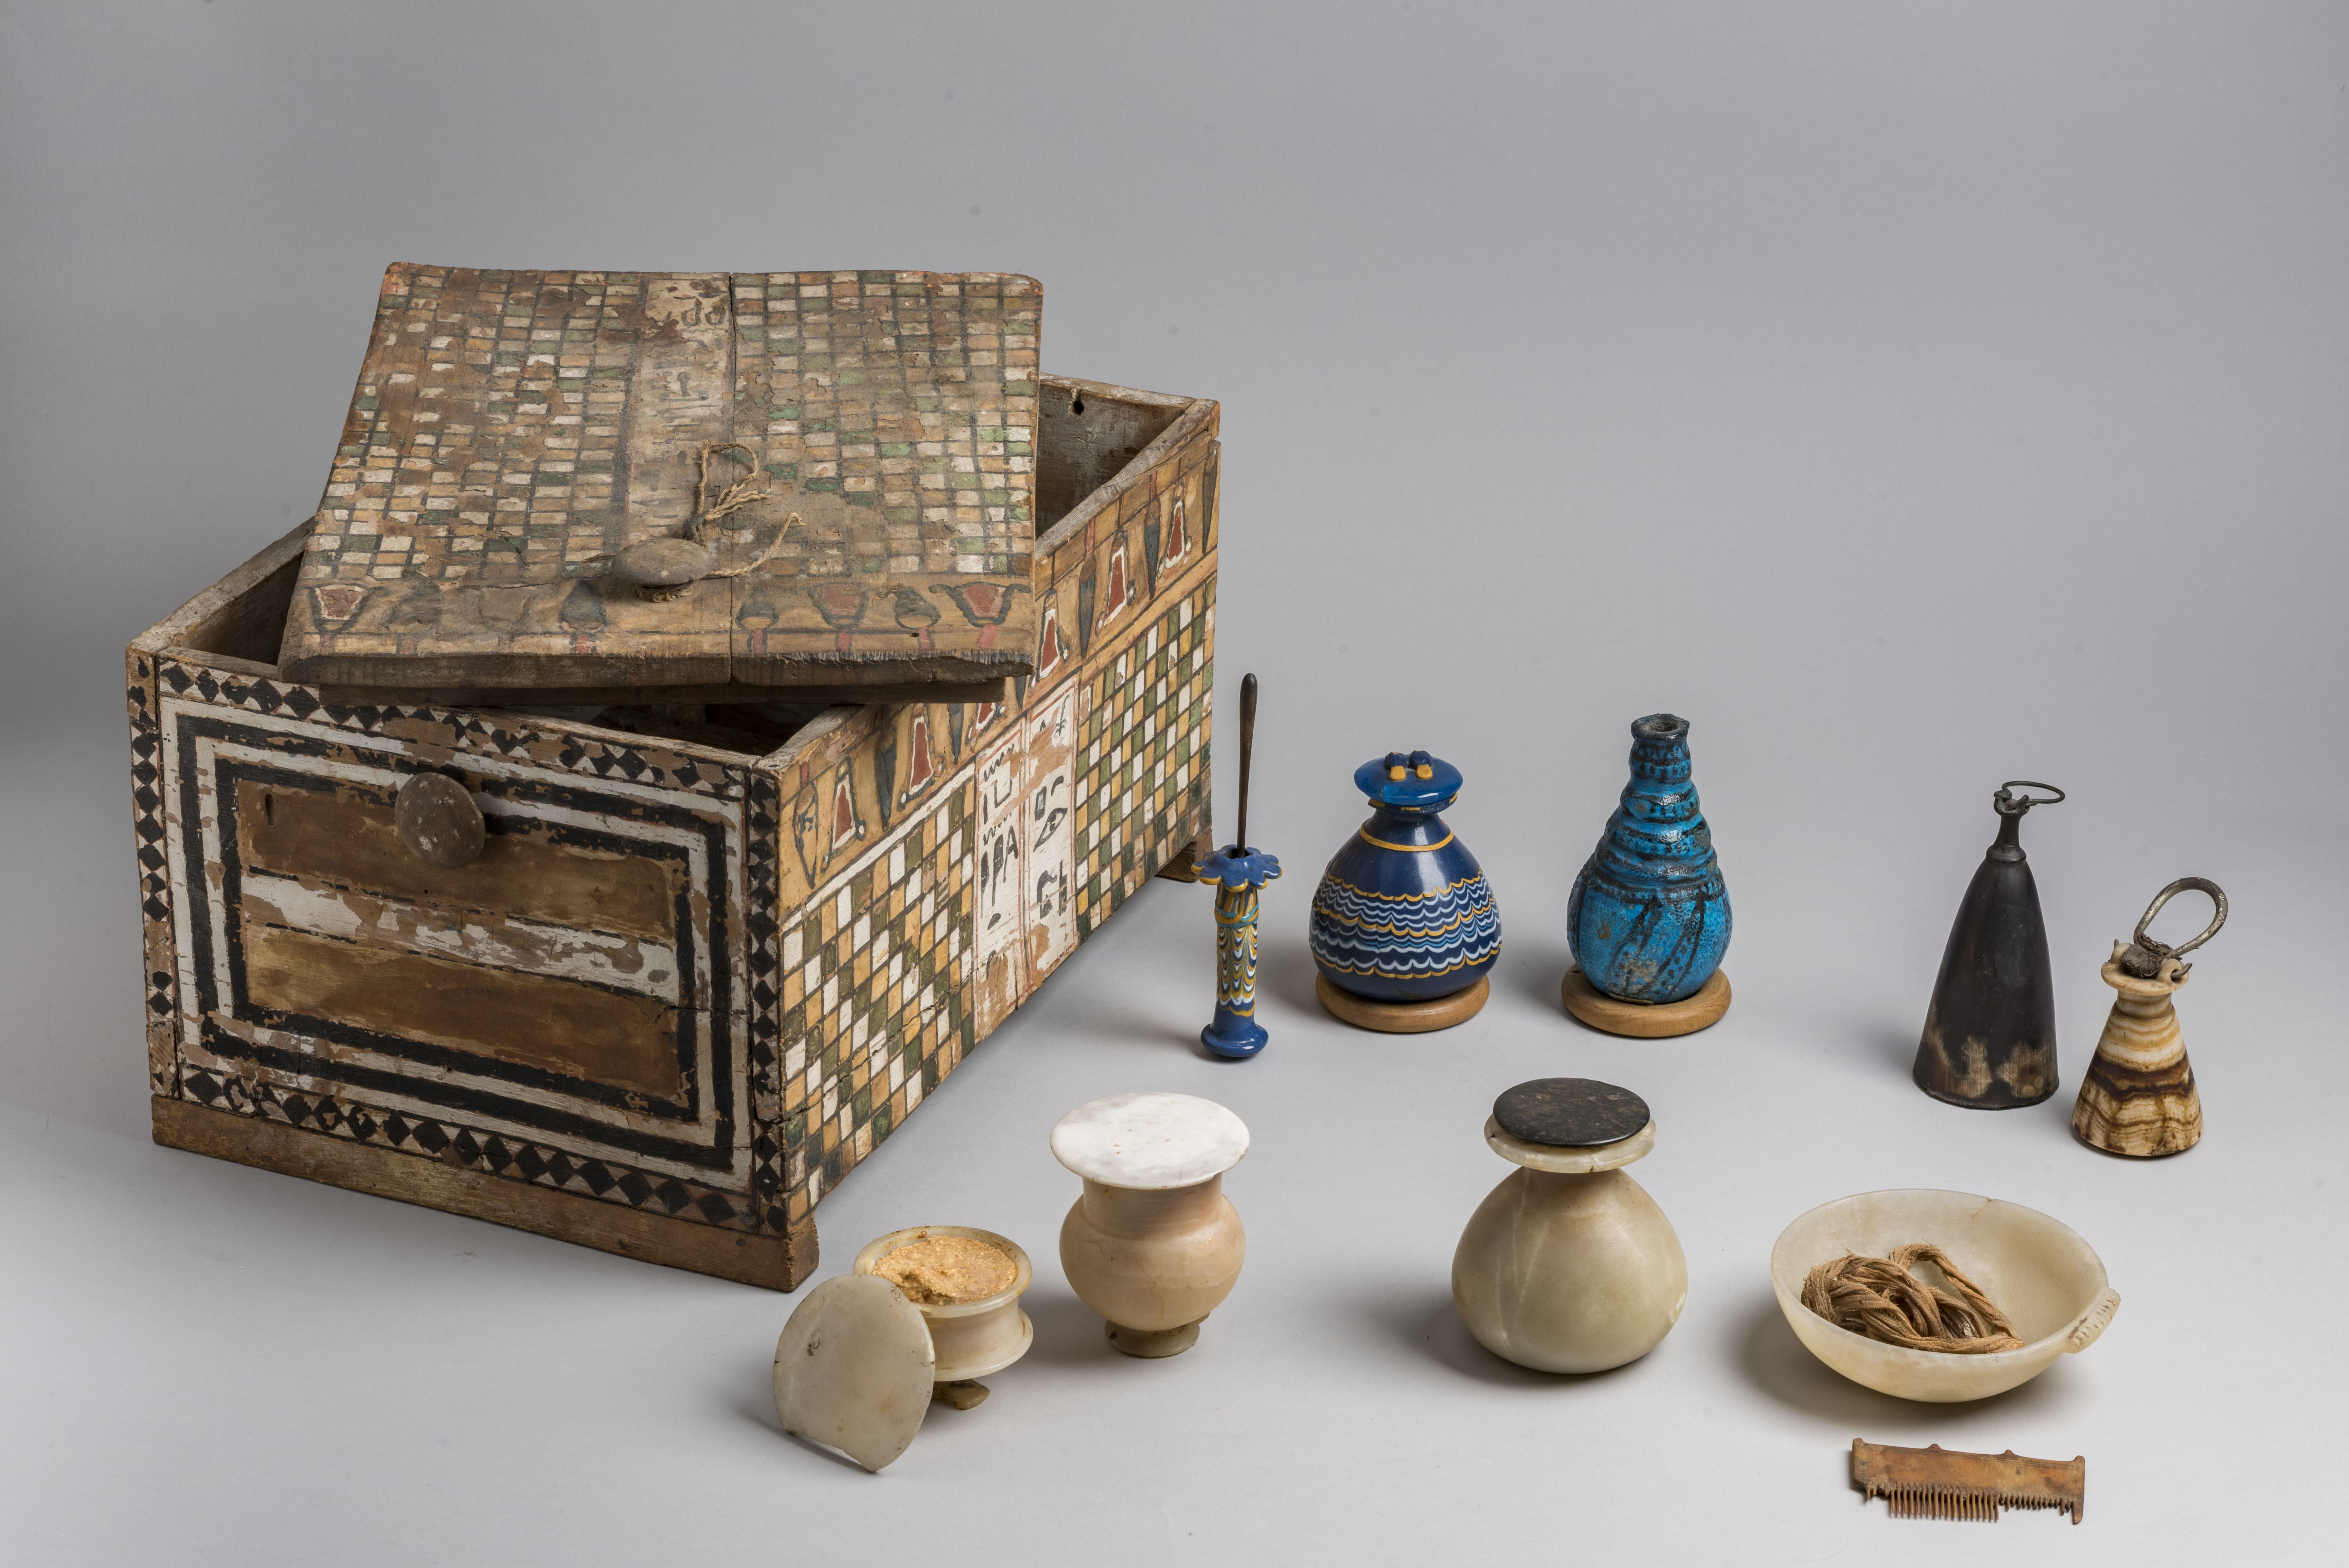 Ook in het oude Egypte werd Kohl-eyeliner gebruikt, zoals het prachtig versierde flesje in deze 3.500 jaar beautycase laat zien. 